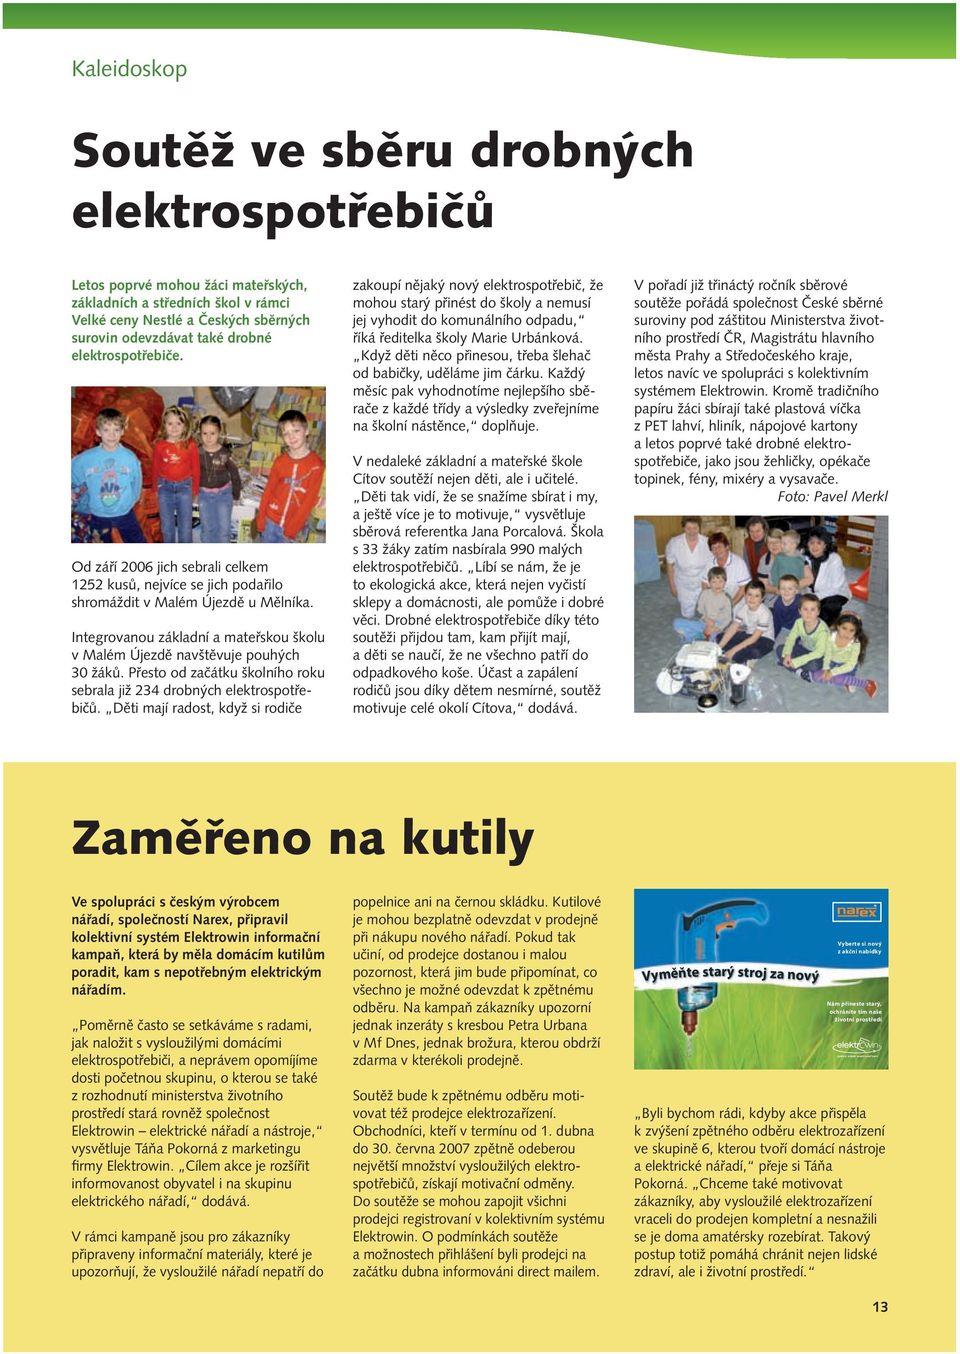 Integrovanou základní a mateřskou školu v Malém Újezdě navštěvuje pouhých 30 žáků. Přesto od začátku školního roku sebrala již 234 drobných elektrospotřebičů.